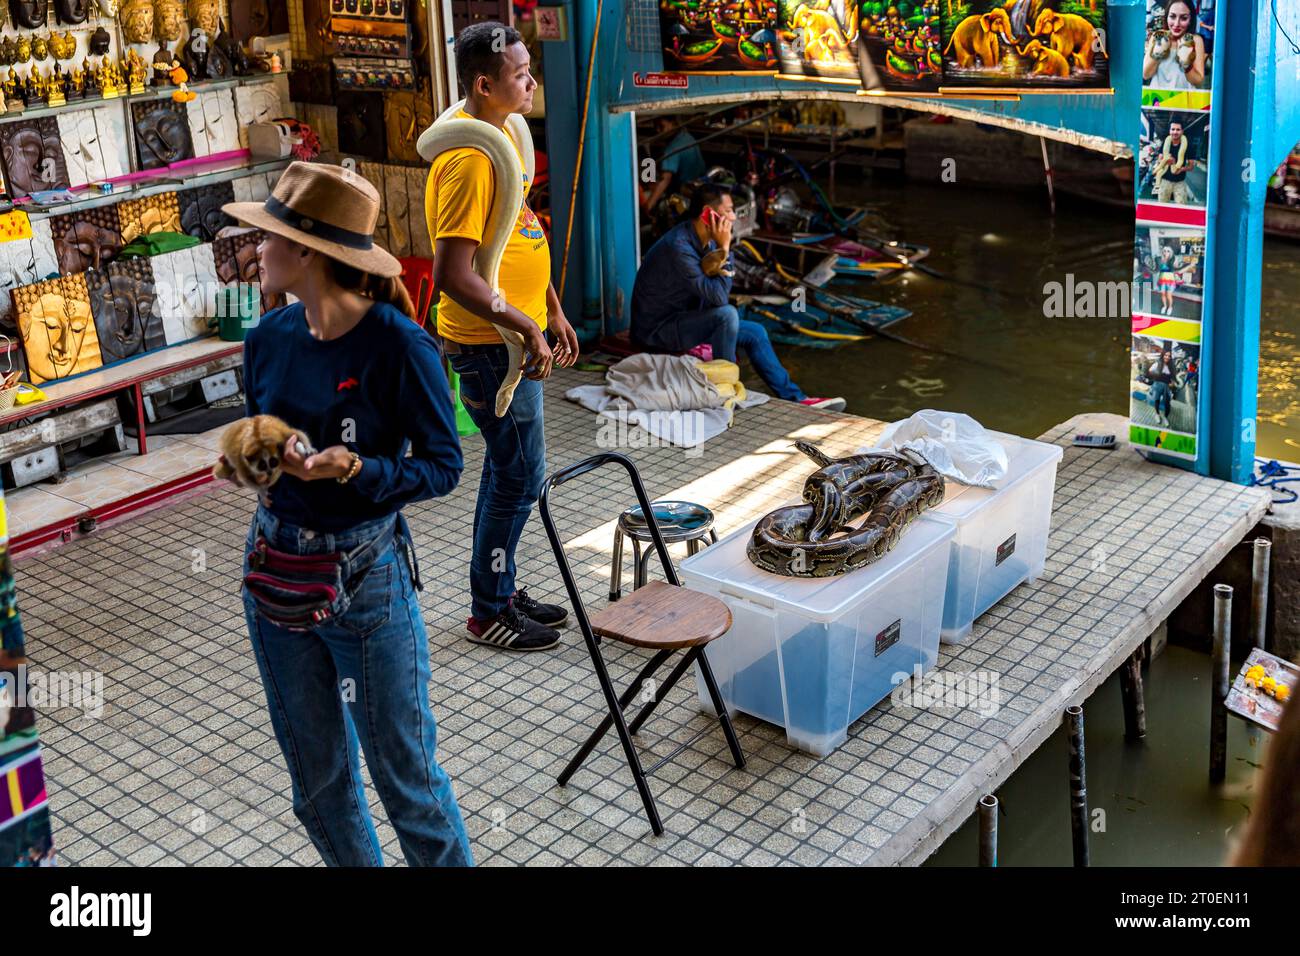 Woman and man offer snakes and small monkey for photograph, floating market, Damnoen Saduak Floating Market, Ratchaburi, Bangkok, Thailand, Asia Stock Photo